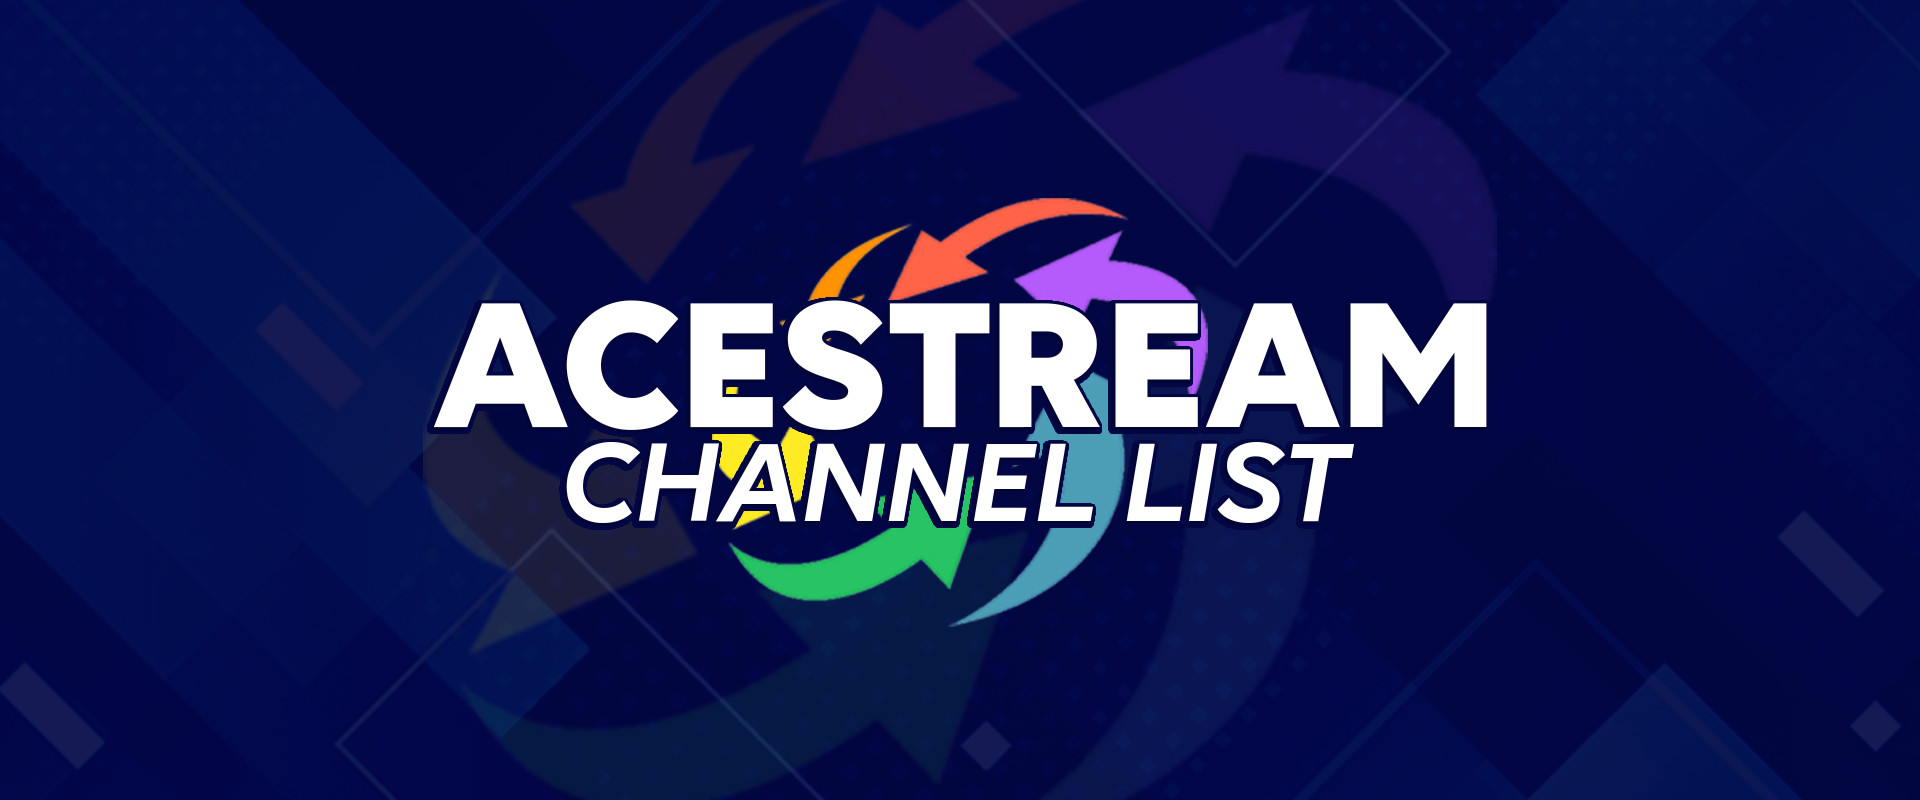 Списък на каналите на Acestream